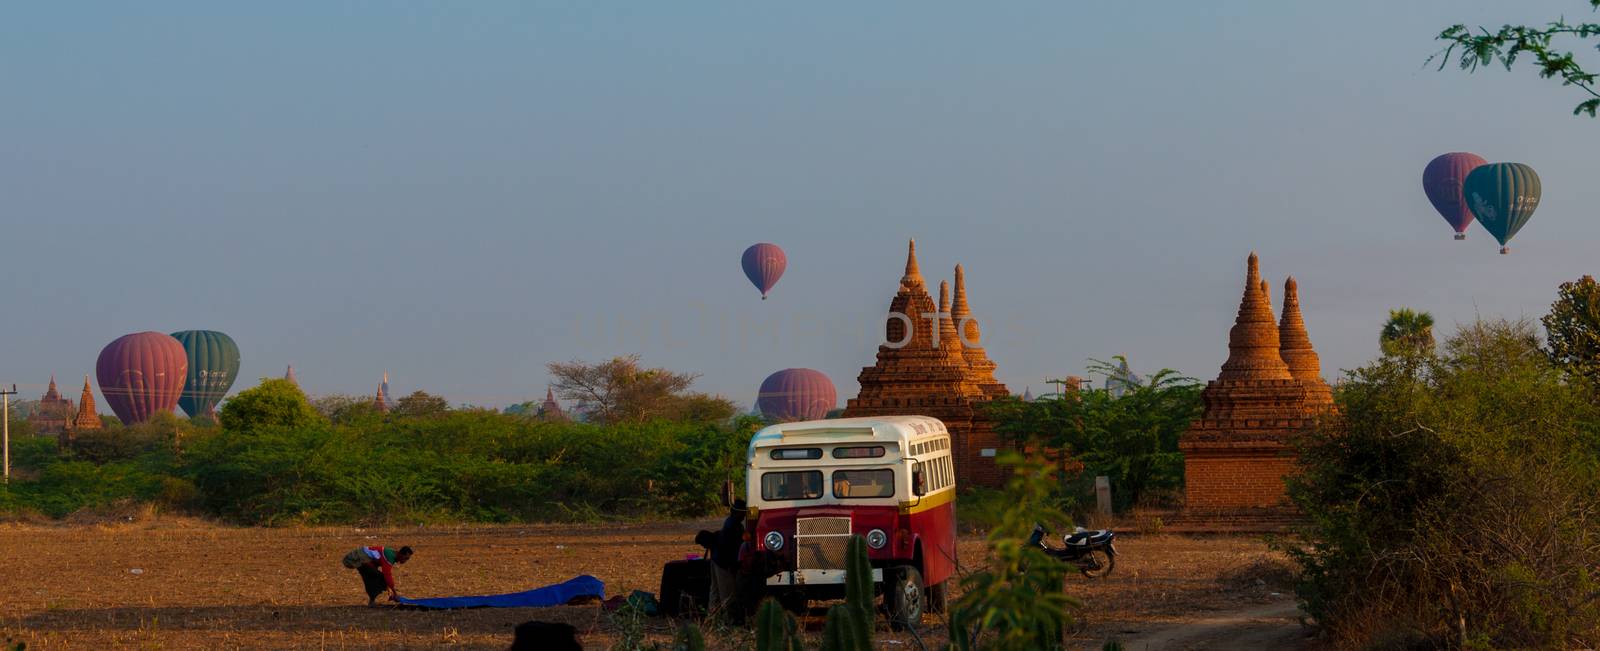 Bus Pagoda Stupa and hot air balloon over Bagan by attiarndt